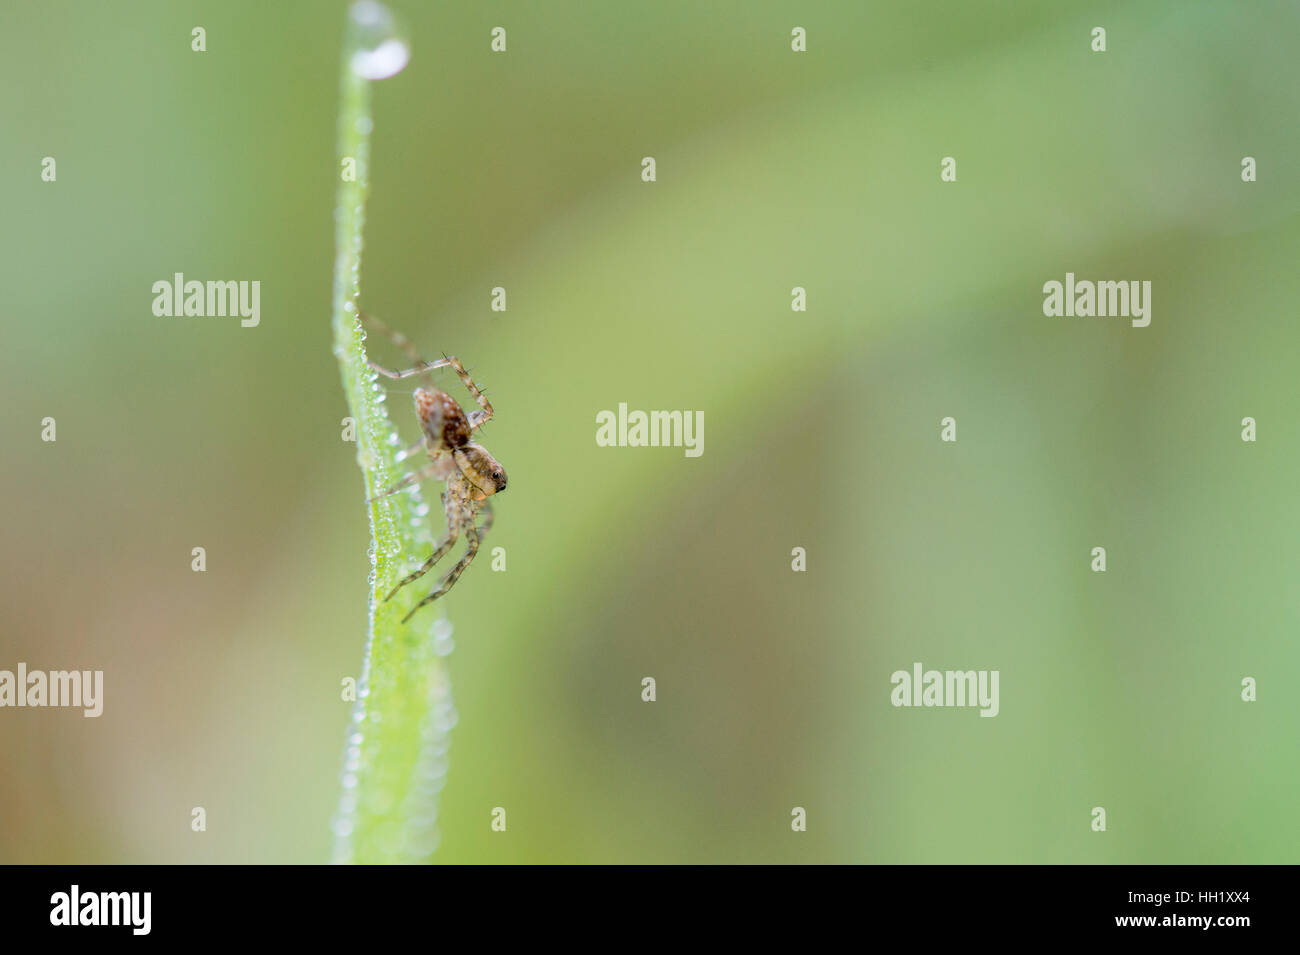 Eine kleine braune Spinne kriecht auf einem Tau bedeckt Stück grünen Gras mit einem grünen Hintergrund. Stockfoto